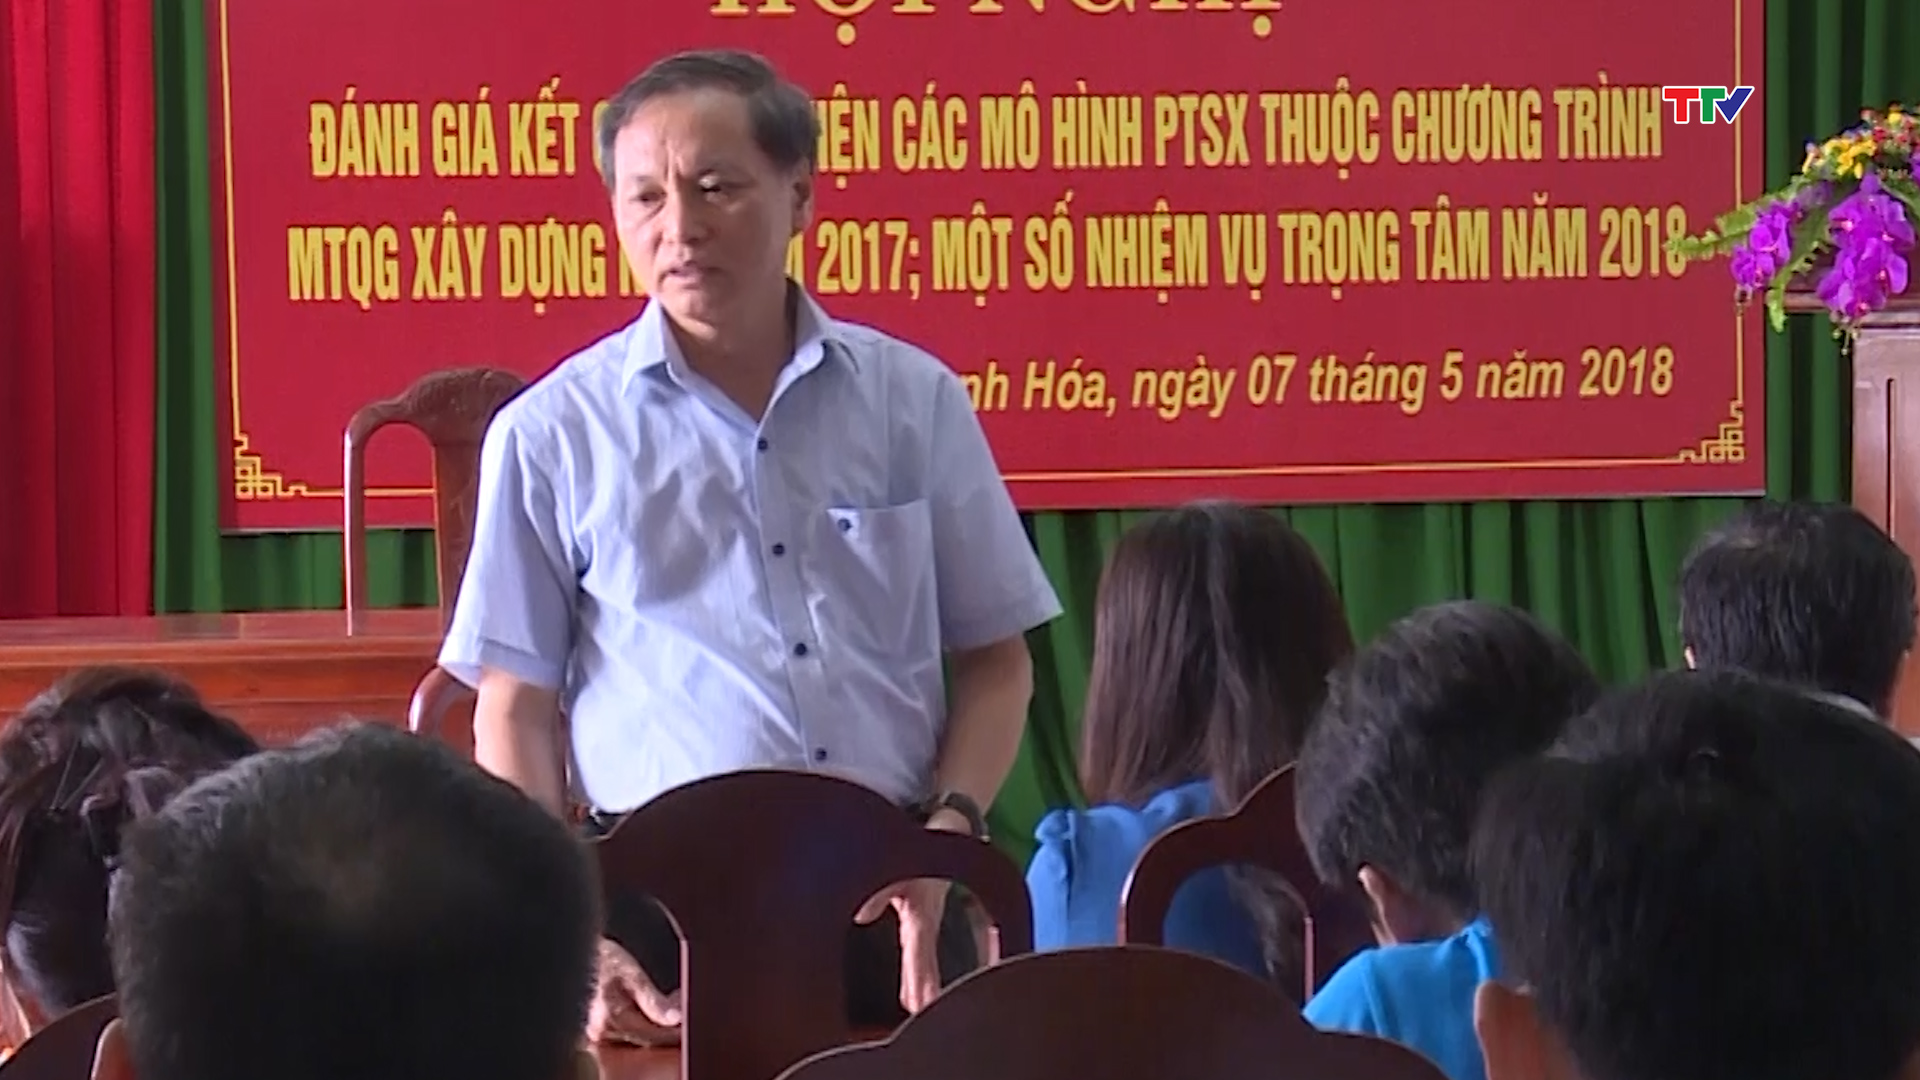 Phó chủ tịch thường trực UBND tỉnh Nguyễn Đức Quyền ghi nhận sự phối hợp tích cực của Ban tổ chức cùng với các địa phương, đơn vị liên quan.